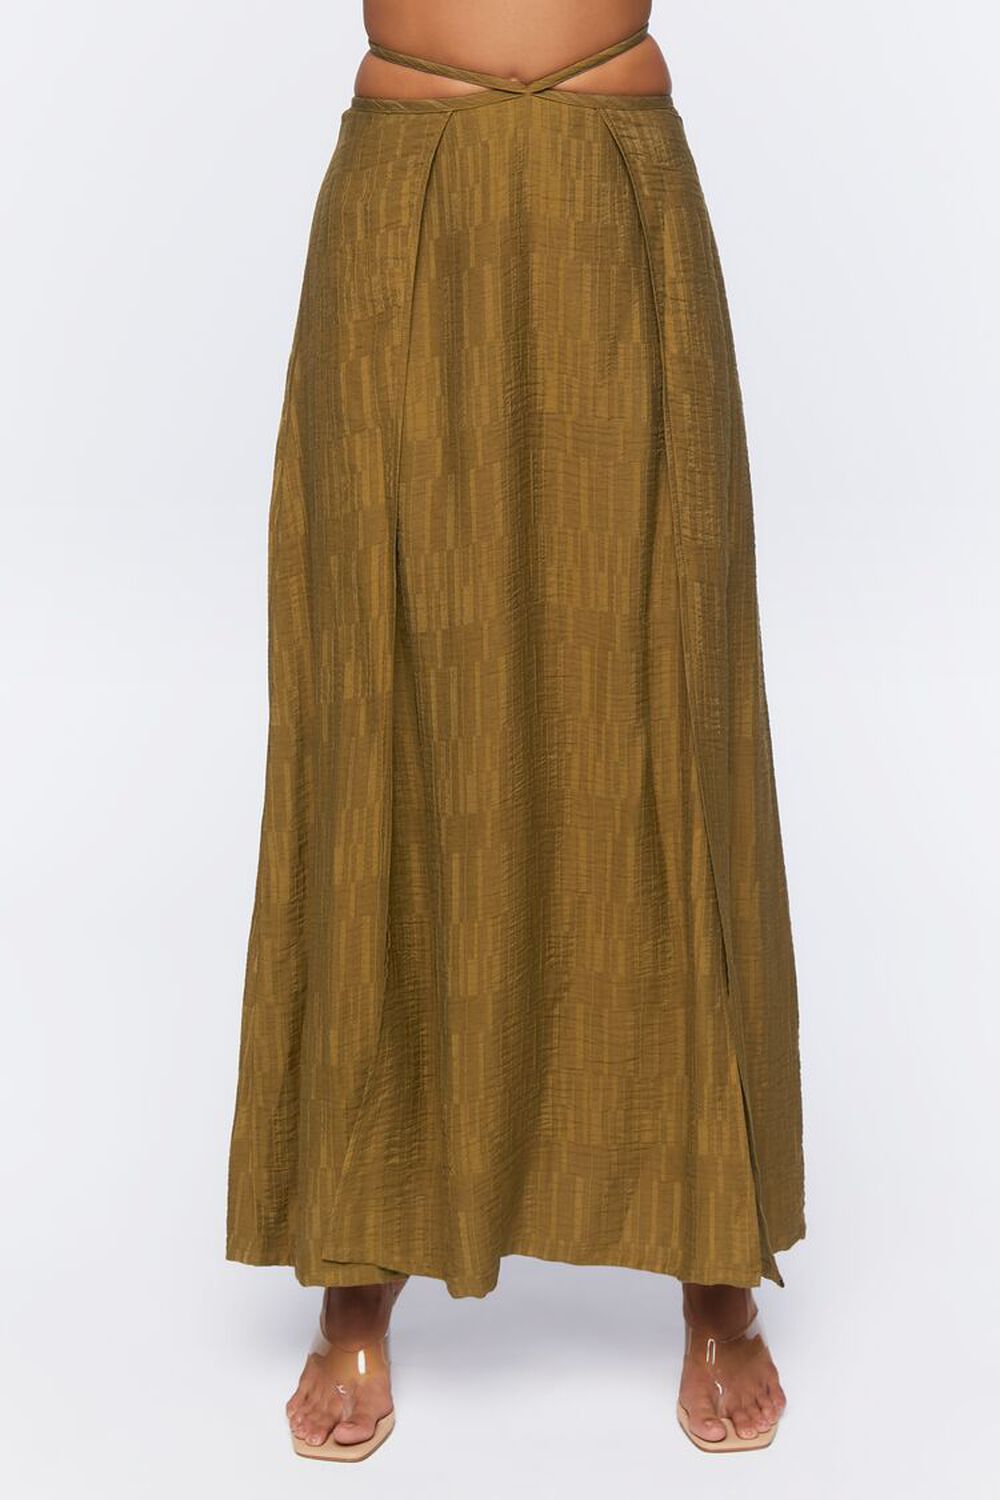 BEECH Jacquard Wrap Maxi Skirt, image 2